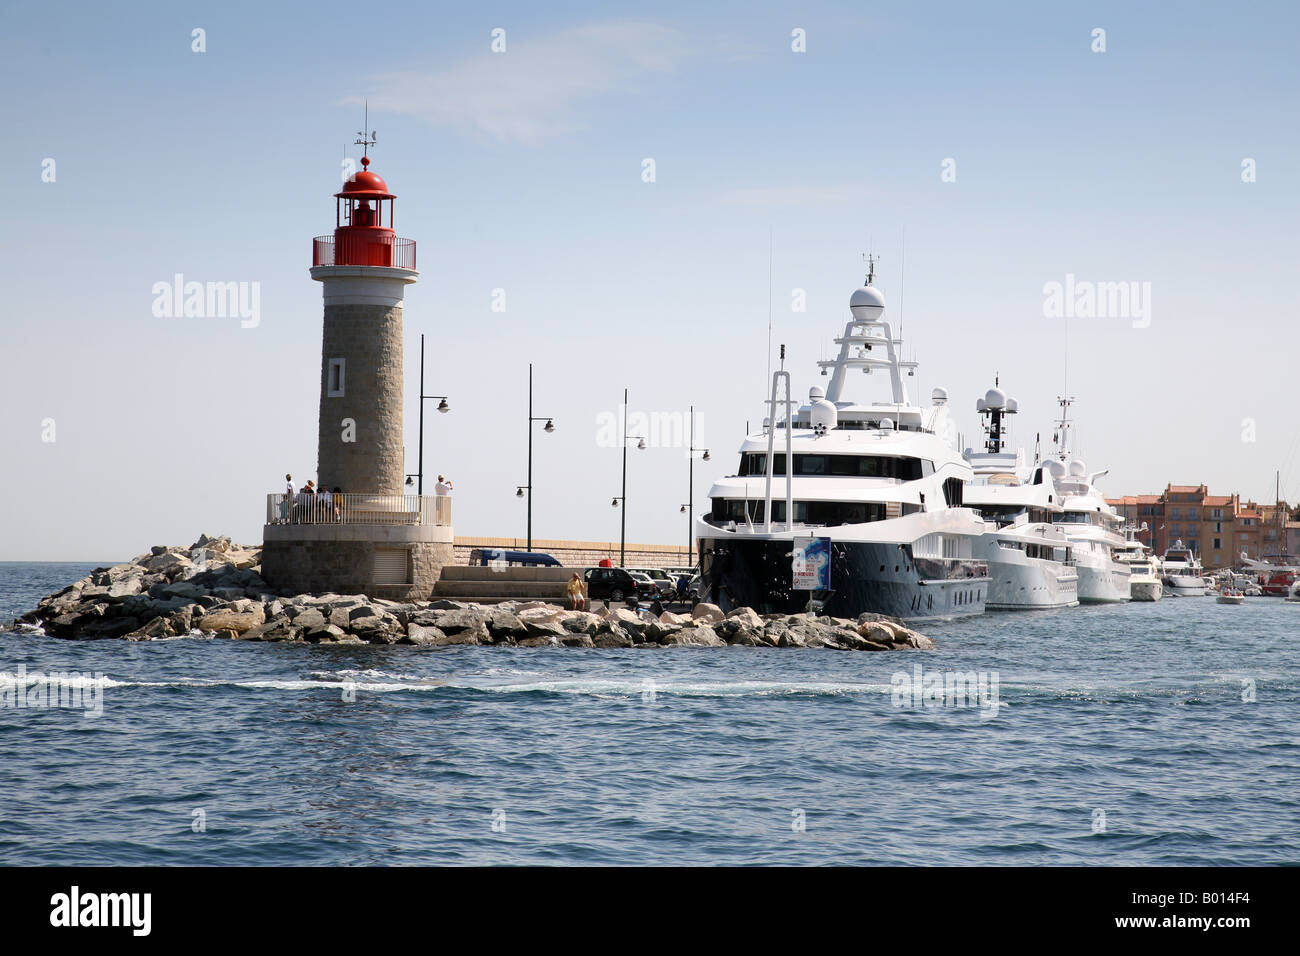 Der Leuchtturm und die teuren Yachten am Eingang zum Hafen von St. Tropez, Provence, Frankreich Stockfoto